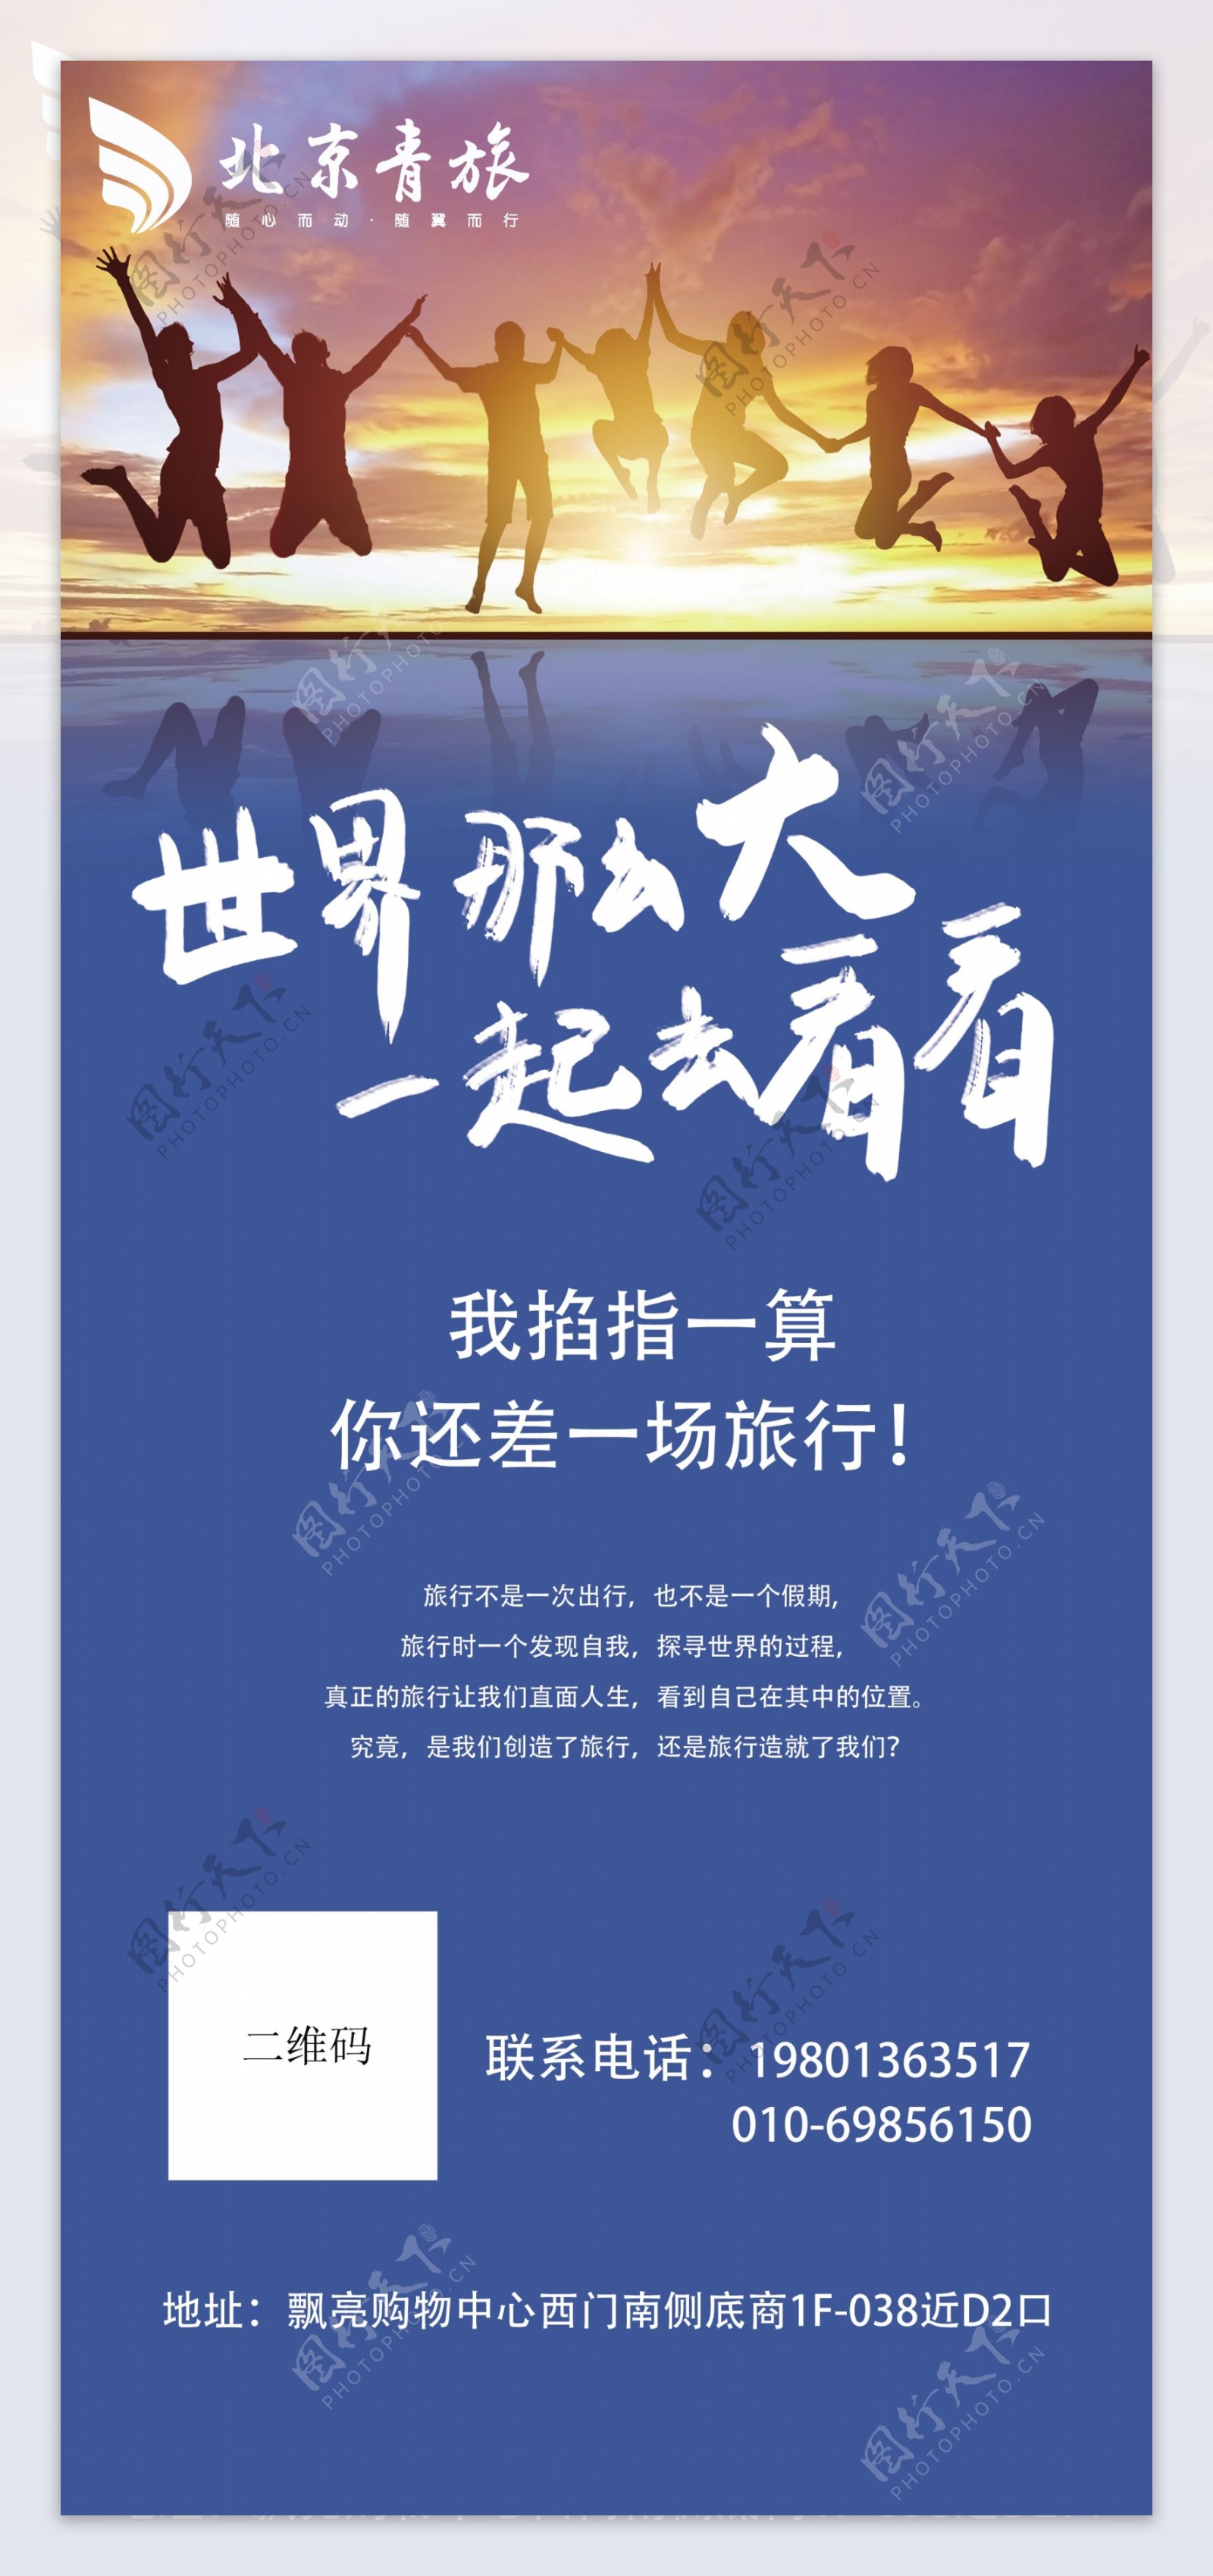 北京青年旅社旅行海报